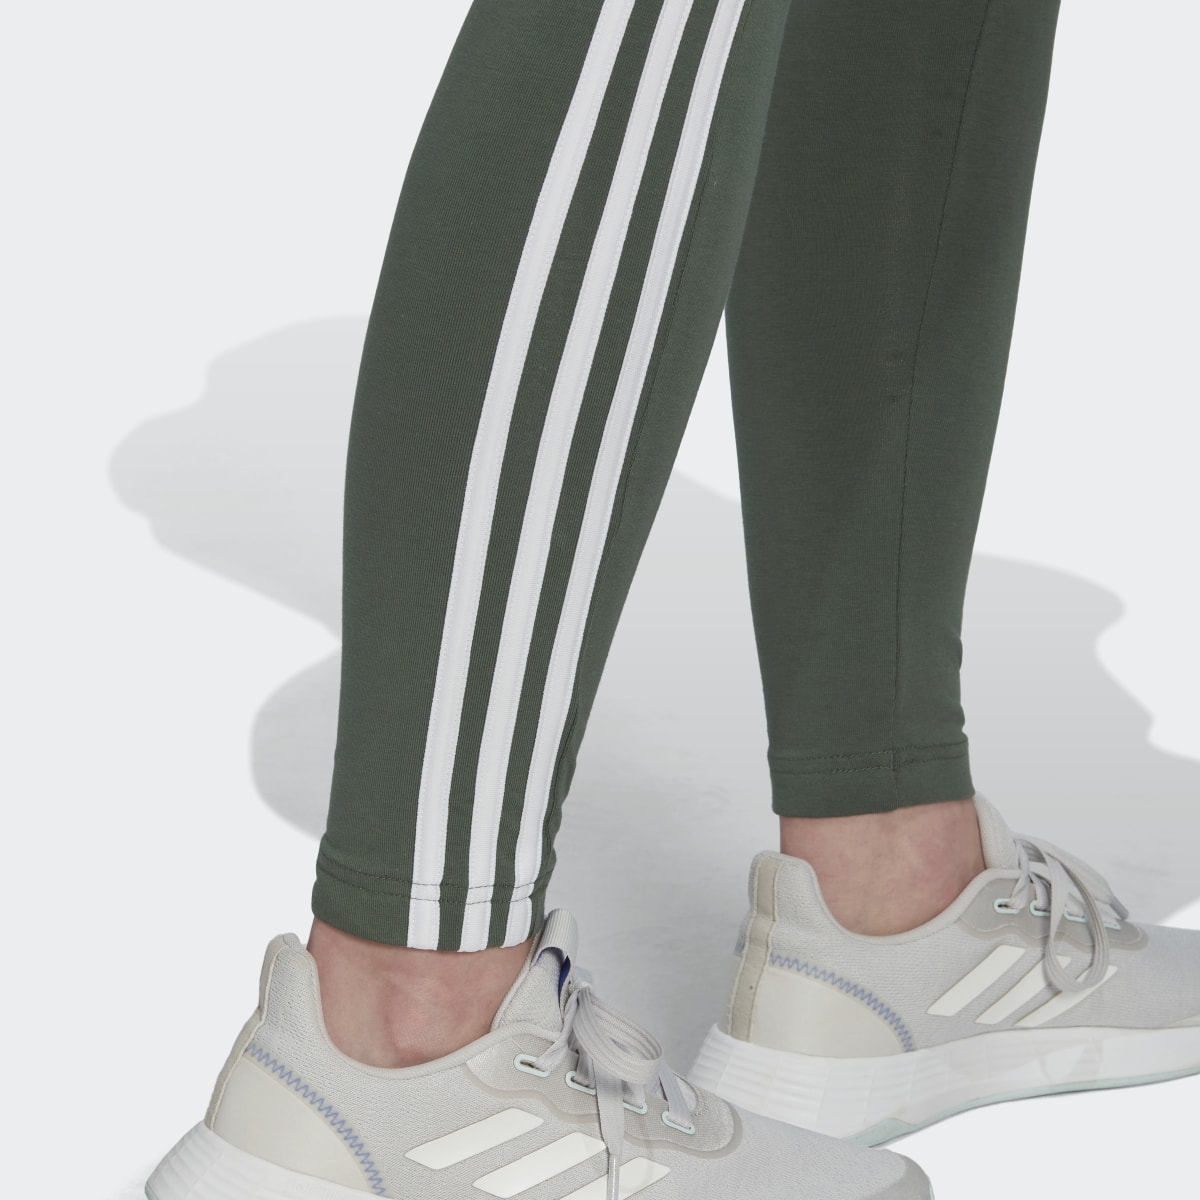 Adidas LOUNGEWEAR Essentials 3-Stripes Leggings. 6